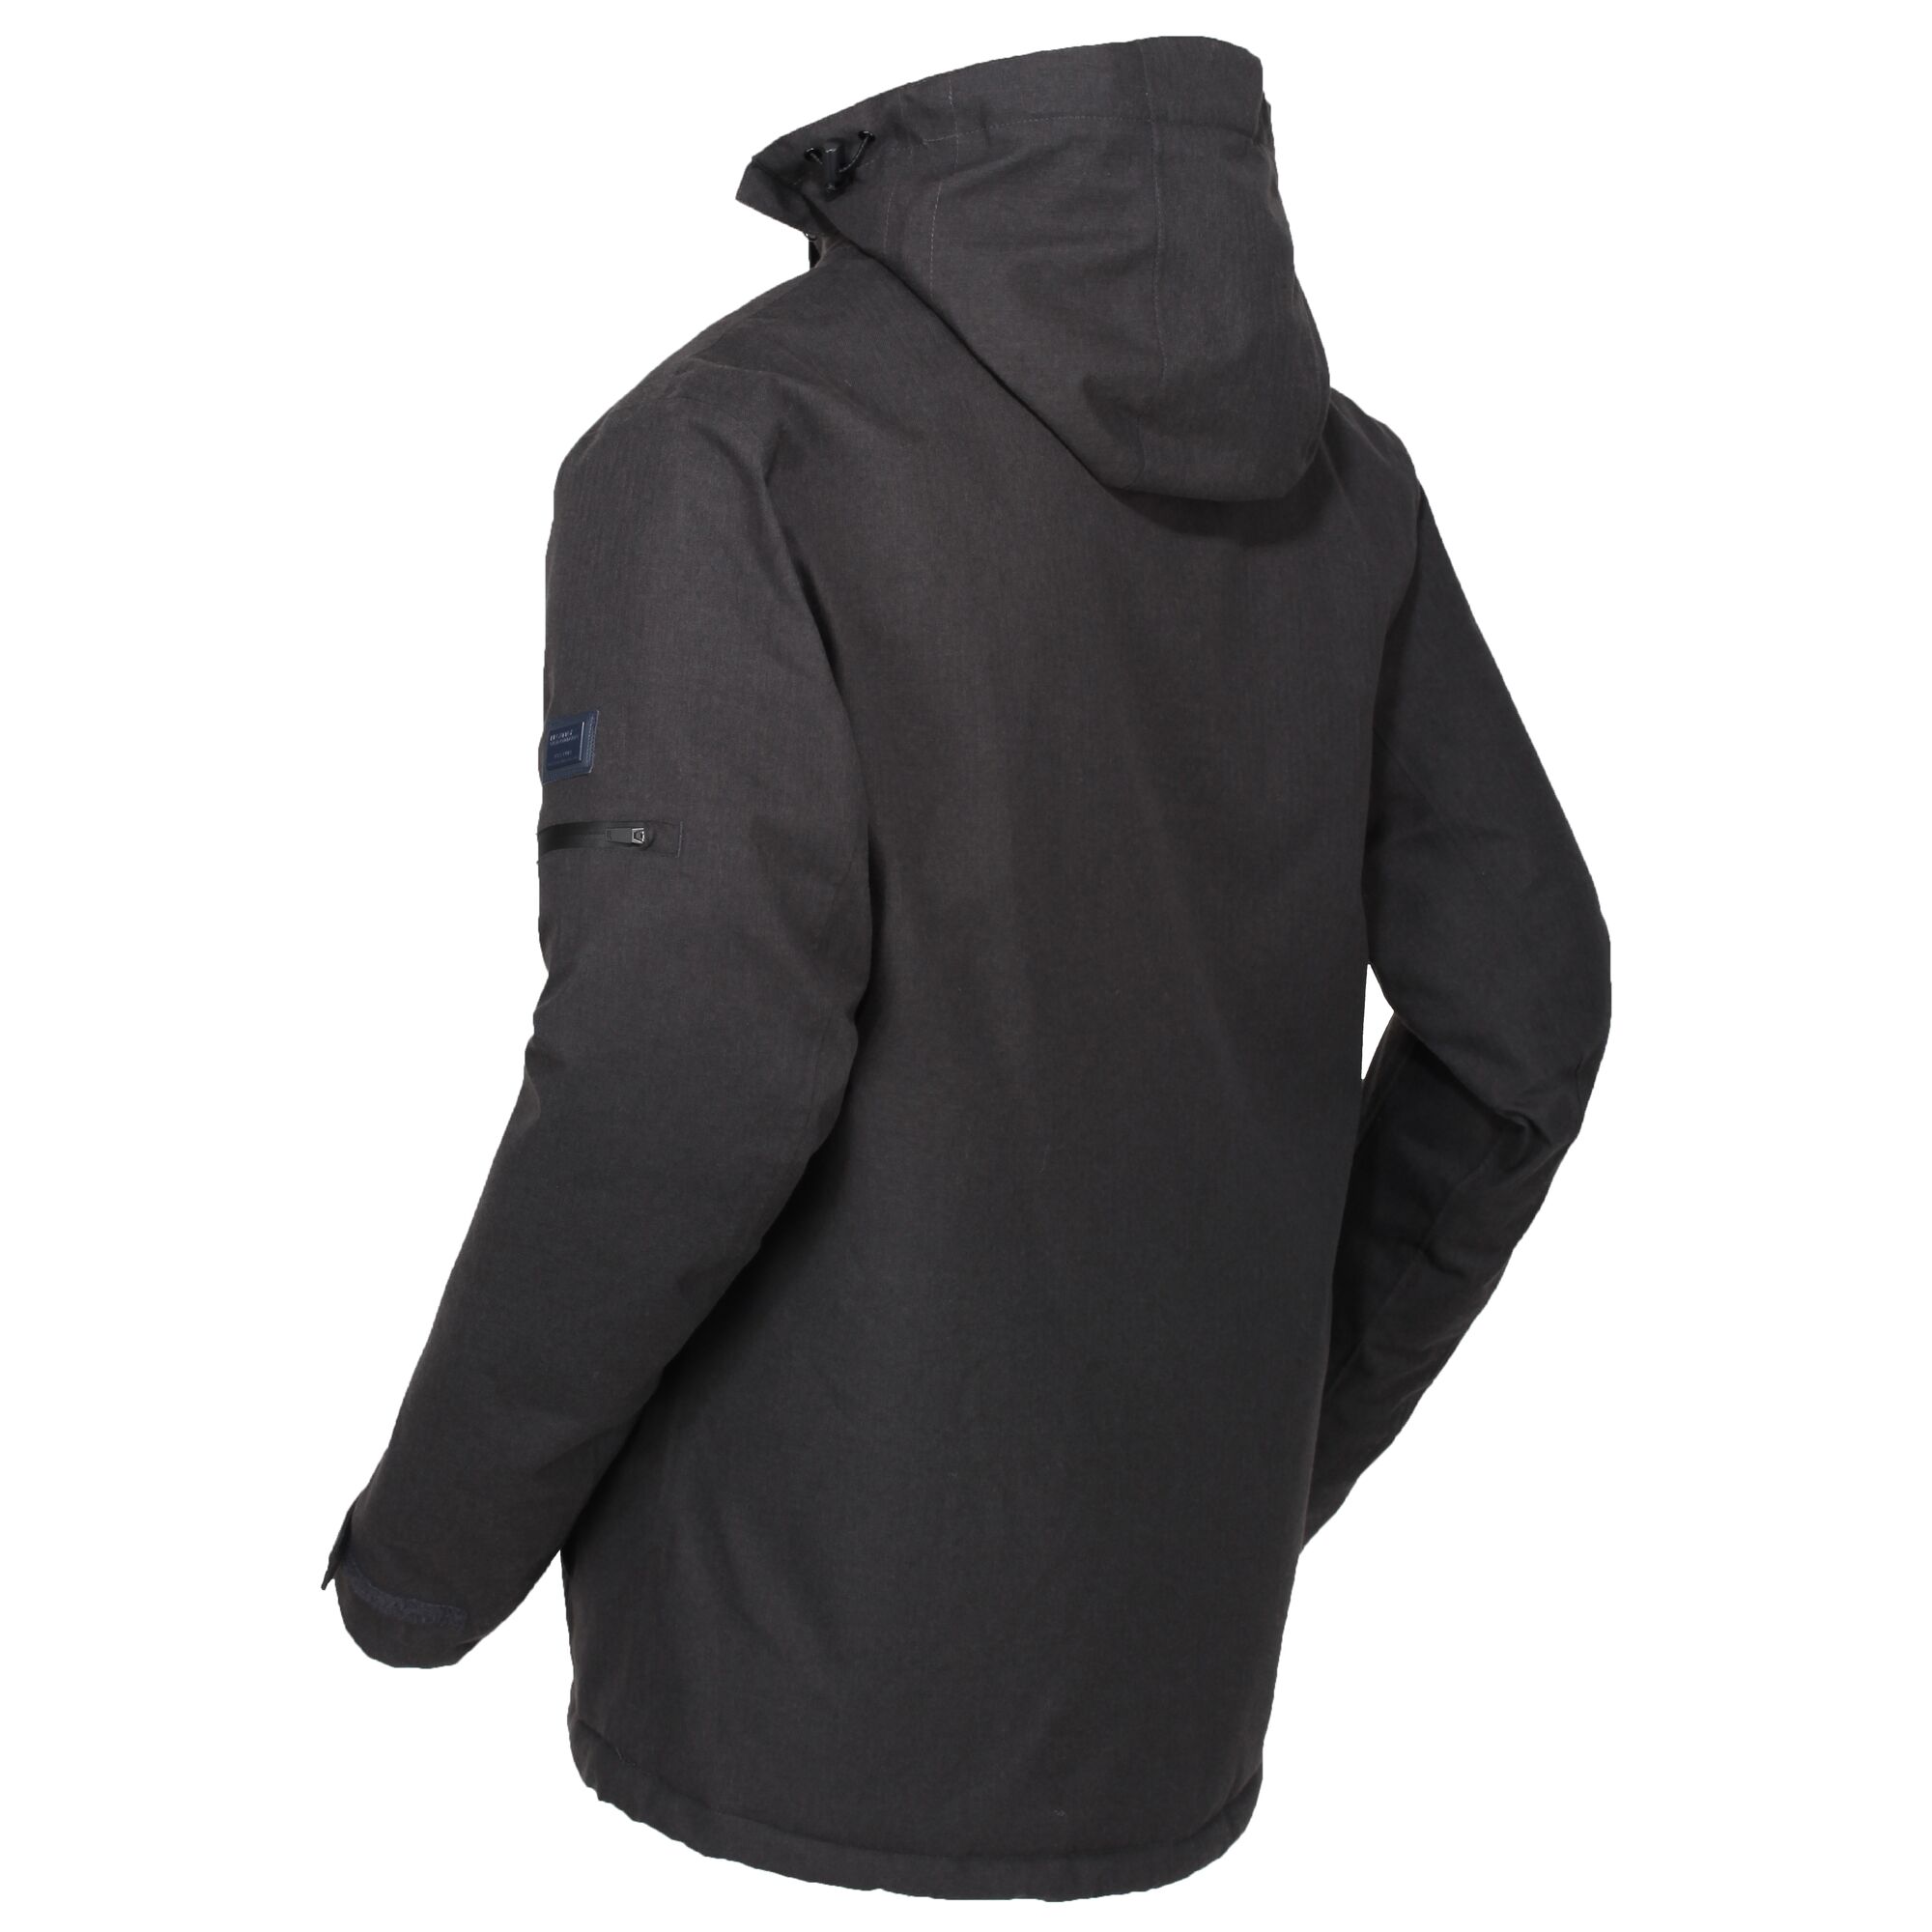 Regatta Highside V Mens Waterproof Insulated Jacket | eBay